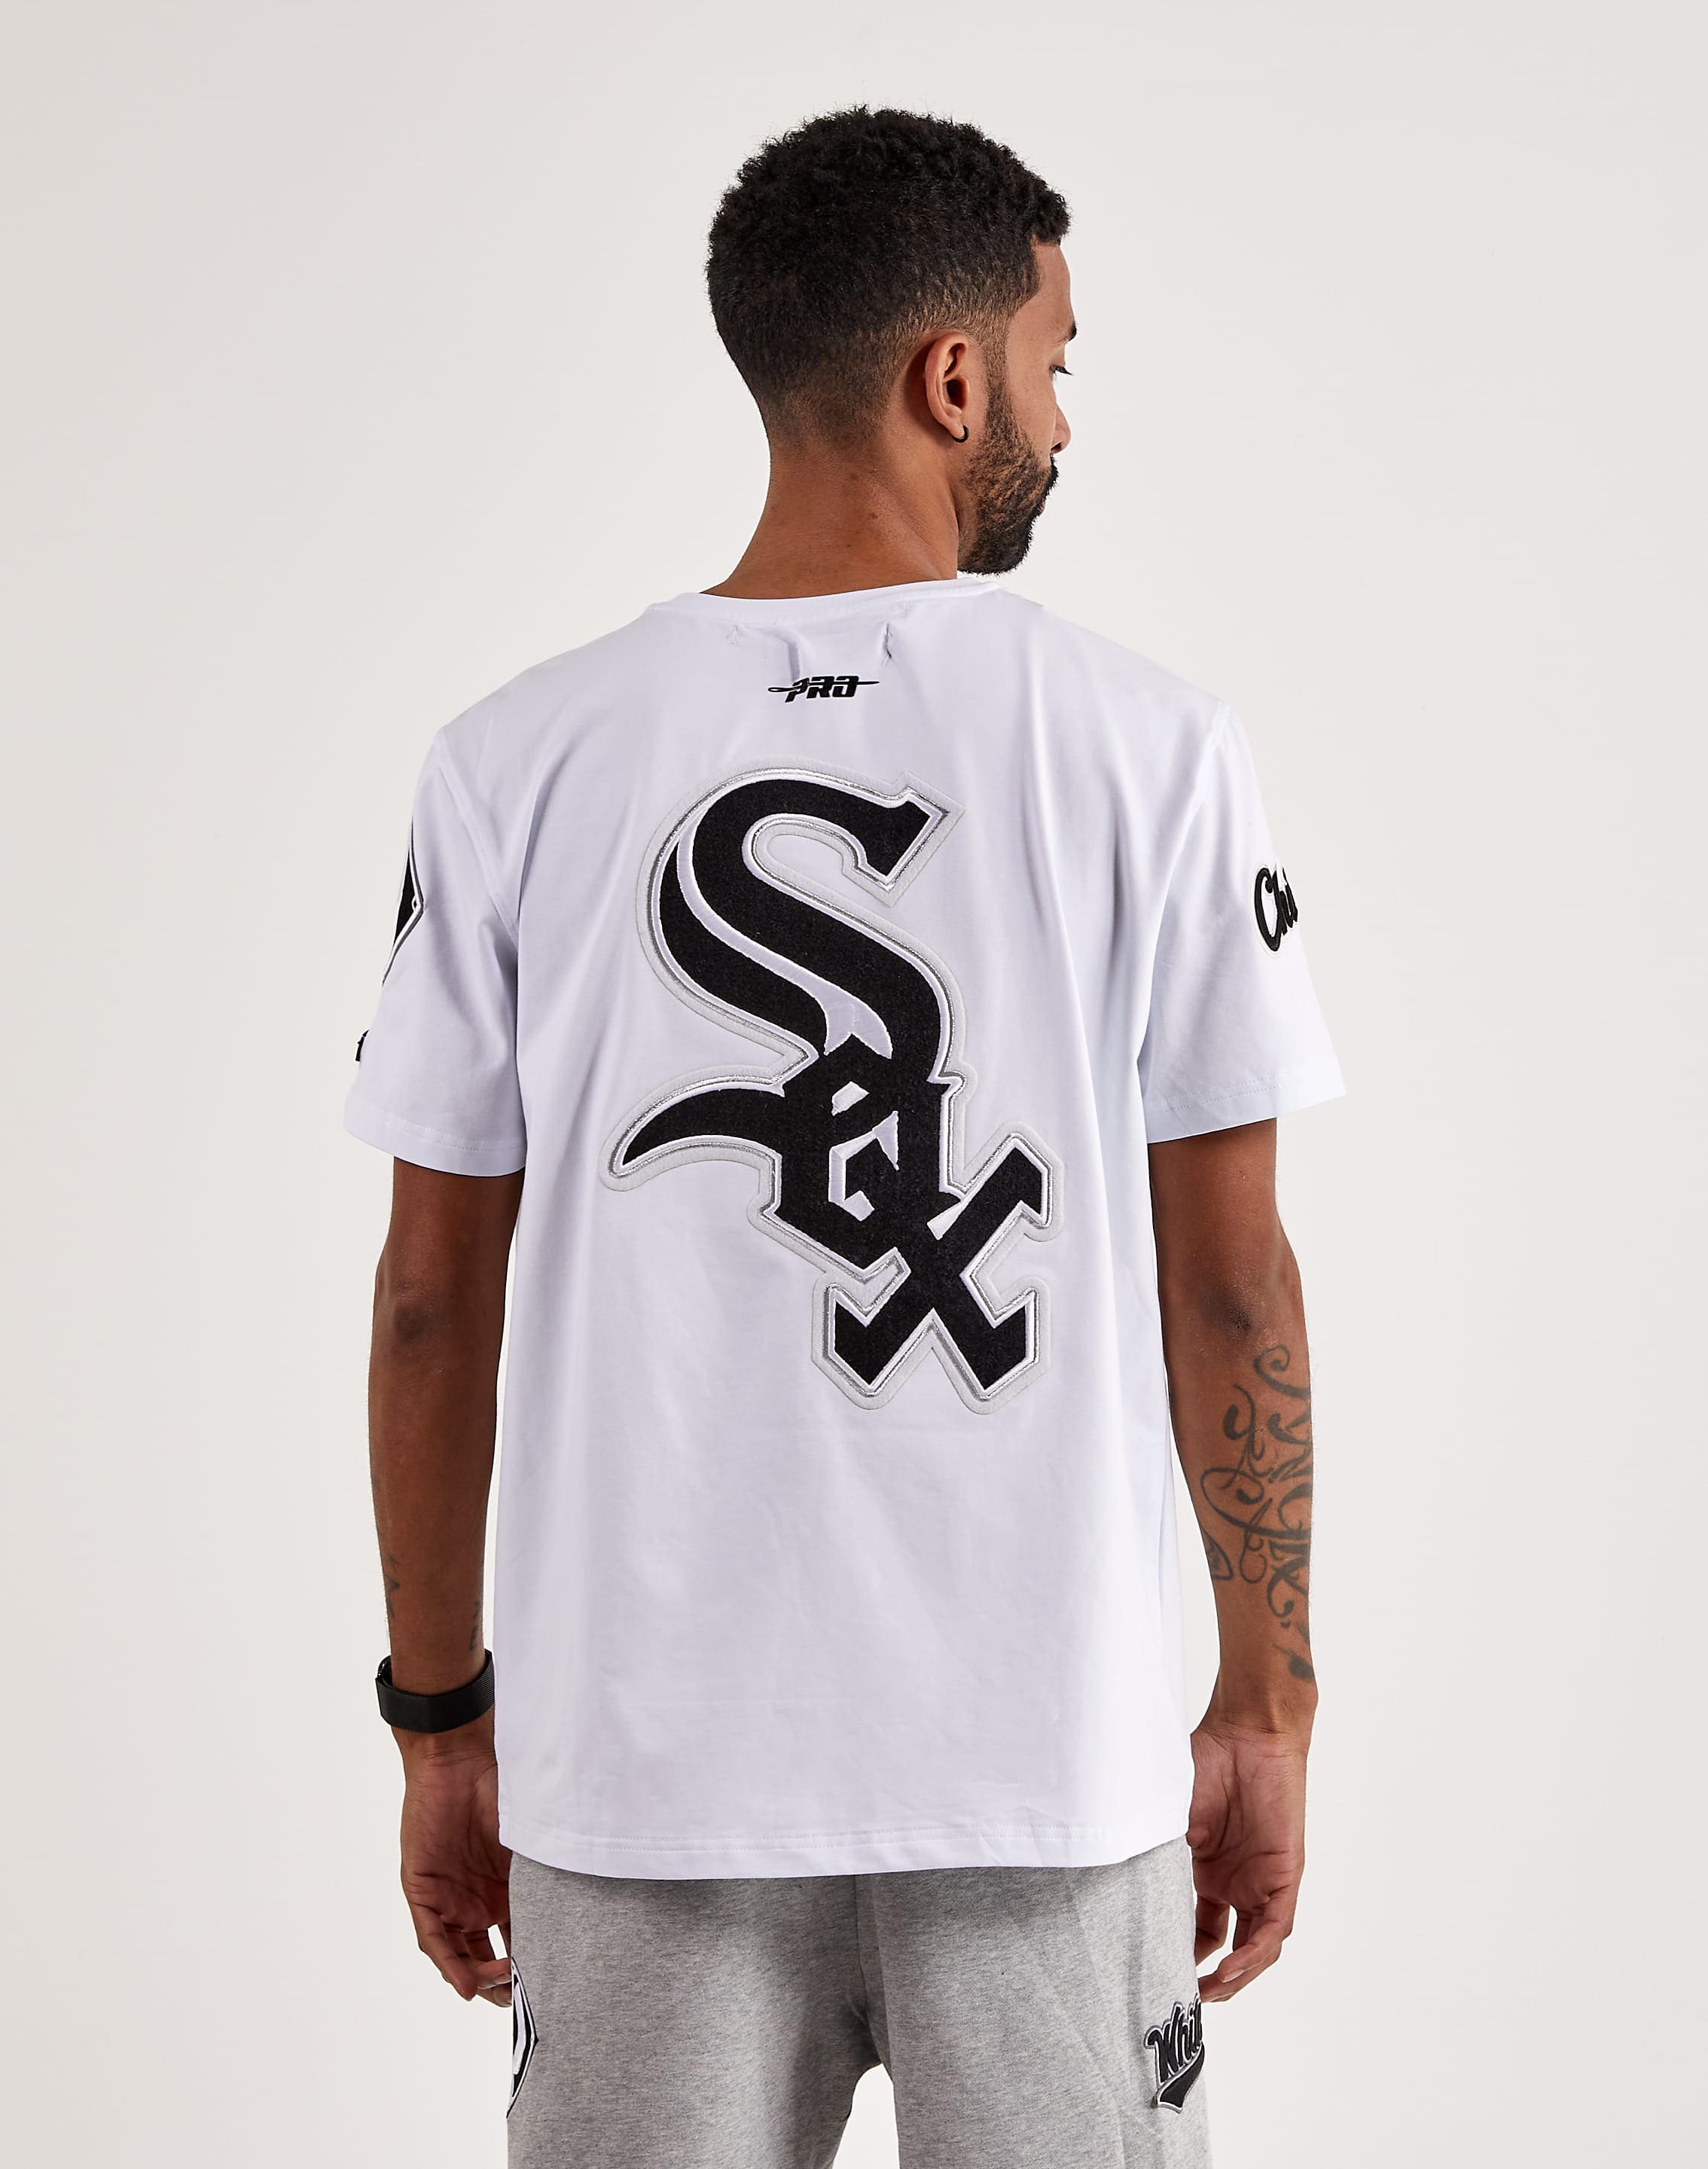 White Sox Shirt 